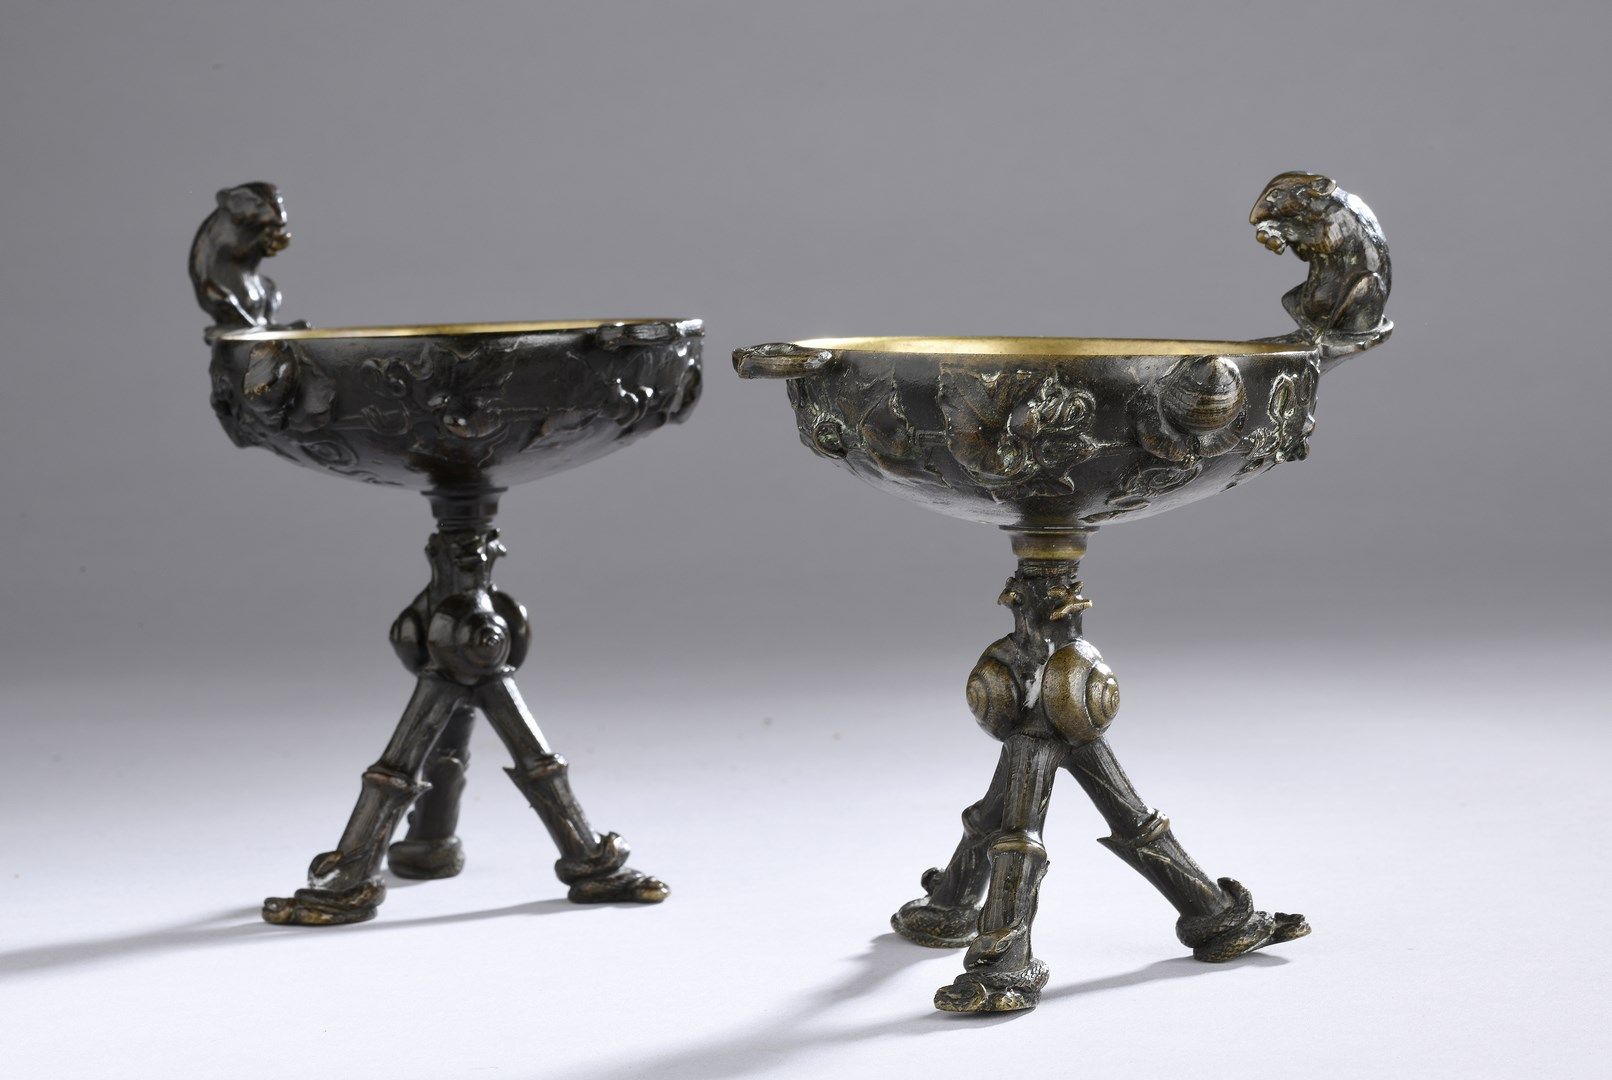 Null 凯恩-奥古斯特-尼古拉，1821-1894

杯子上有蛇、蜗牛和一只老鼠

两个有棕色铜锈的鼎形铜杯，装饰有藤叶、蛇、蜗牛和一只老鼠（主要是其中一个有&hellip;